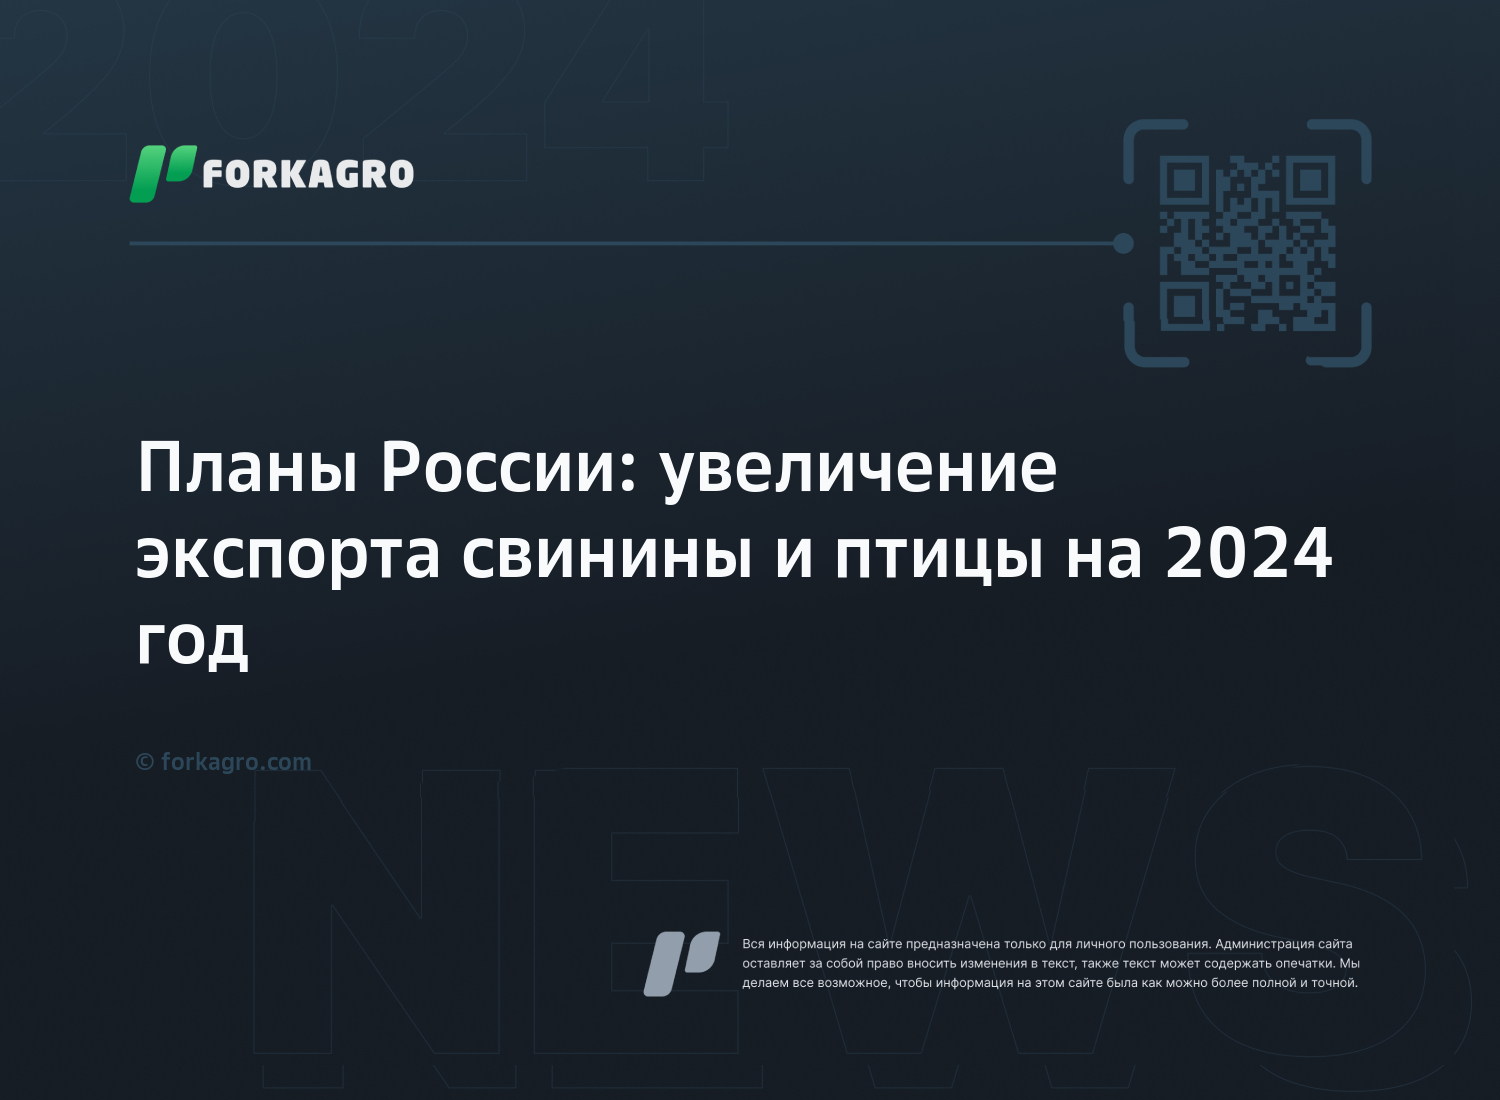 Планы России: увеличение экспорта свинины и птицы на 2024 год